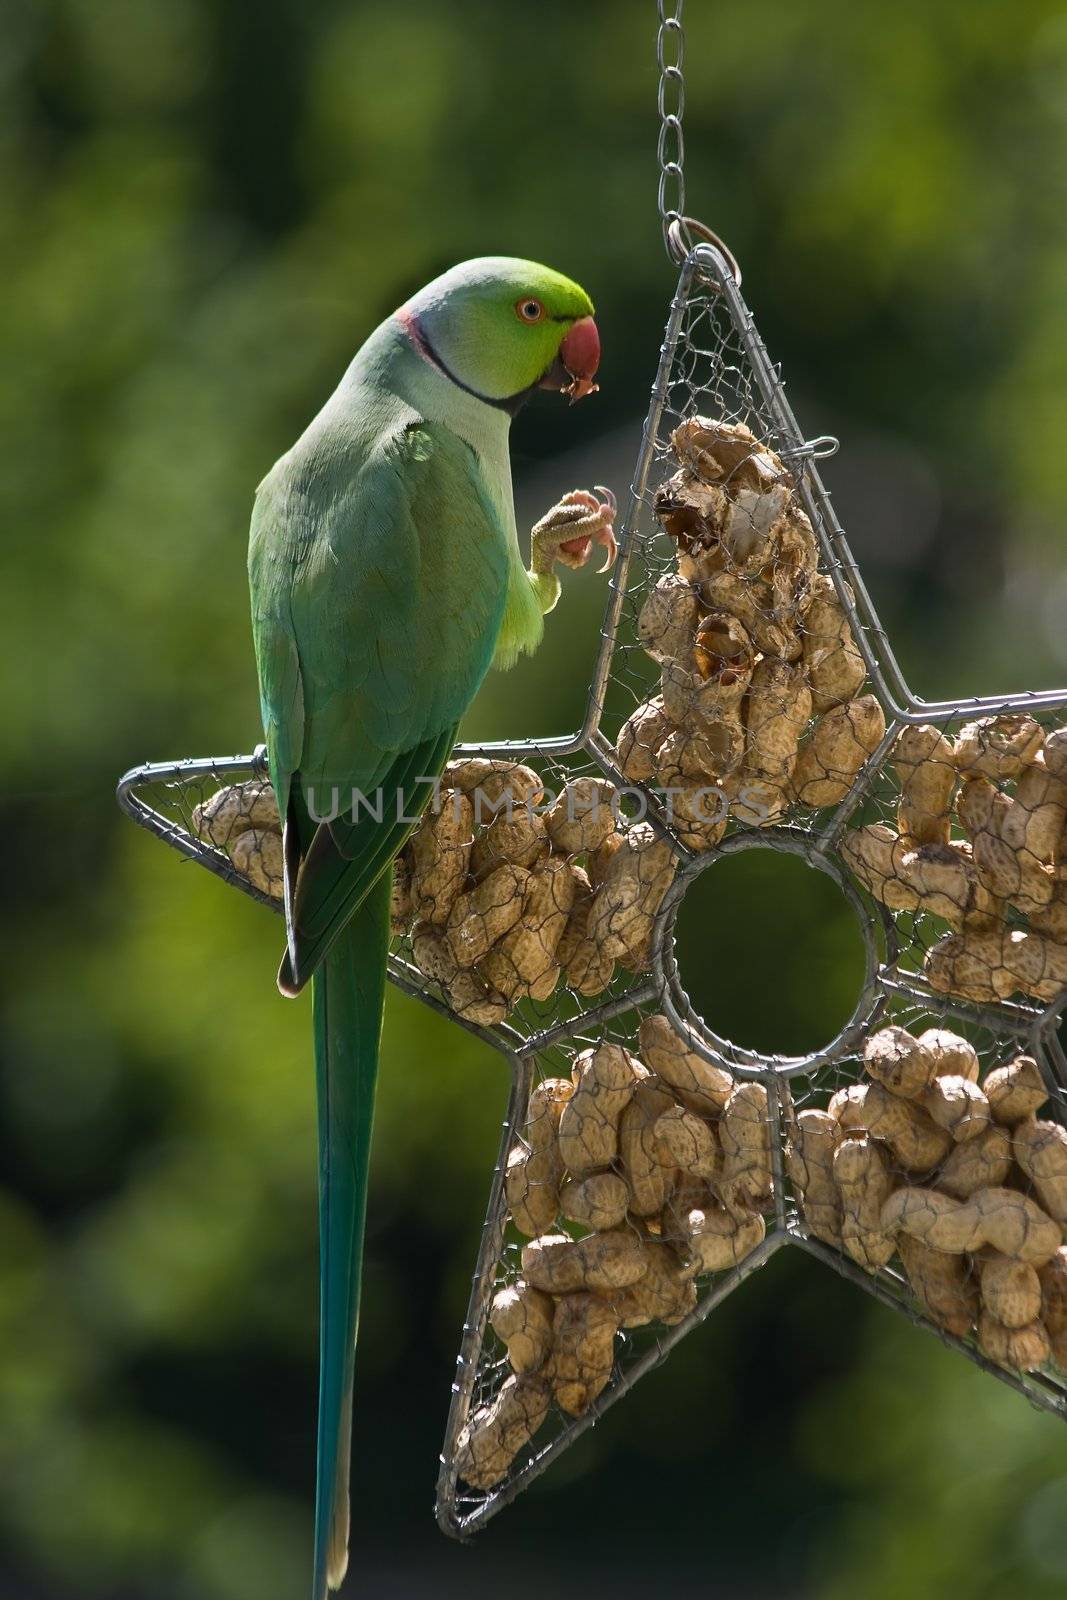 Rose-ringed parakeet or ringnecked parakeet eating peanut sitting on feeding hanger